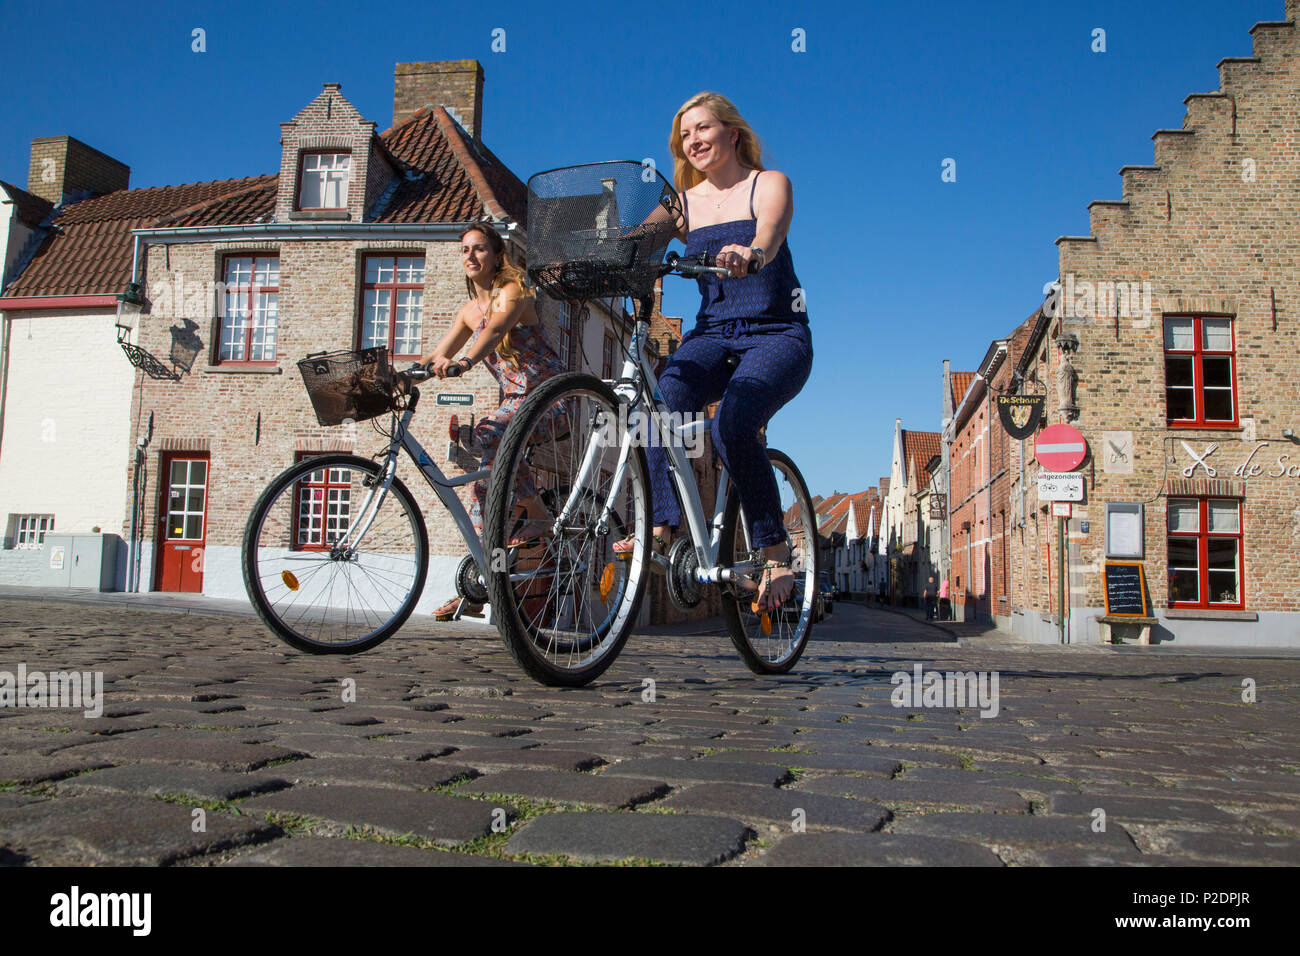 Deux jeunes femmes sur des vélos sur une rue pavée, près de Marina, Bruges Brugge Boeveriestraat 2, région flamande, Belgique Banque D'Images